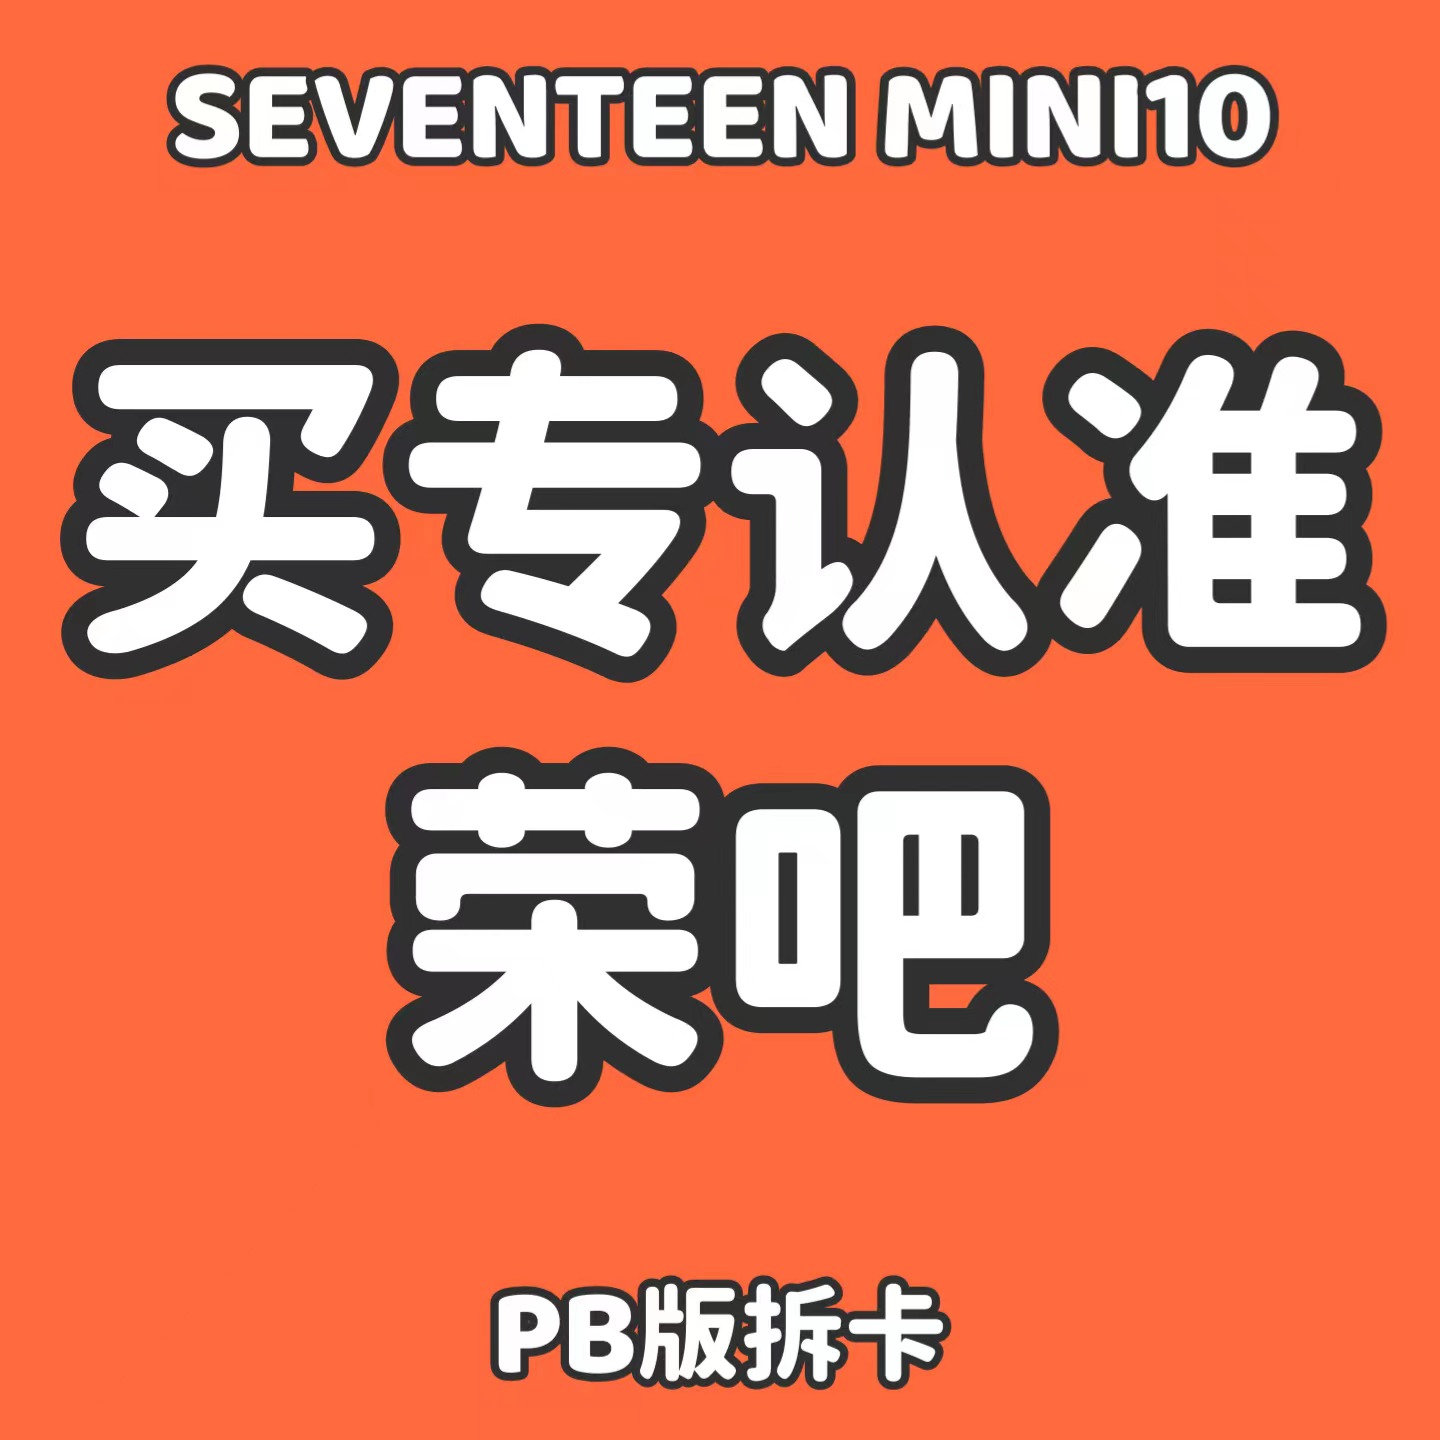 [拆卡专] [Ktown4u Special Gift] *备注微店注册手机号 *指定权顺荣特典 SEVENTEEN - 10th Mini Album [FML] (Random Ver.) _权顺荣Hoshi_Star